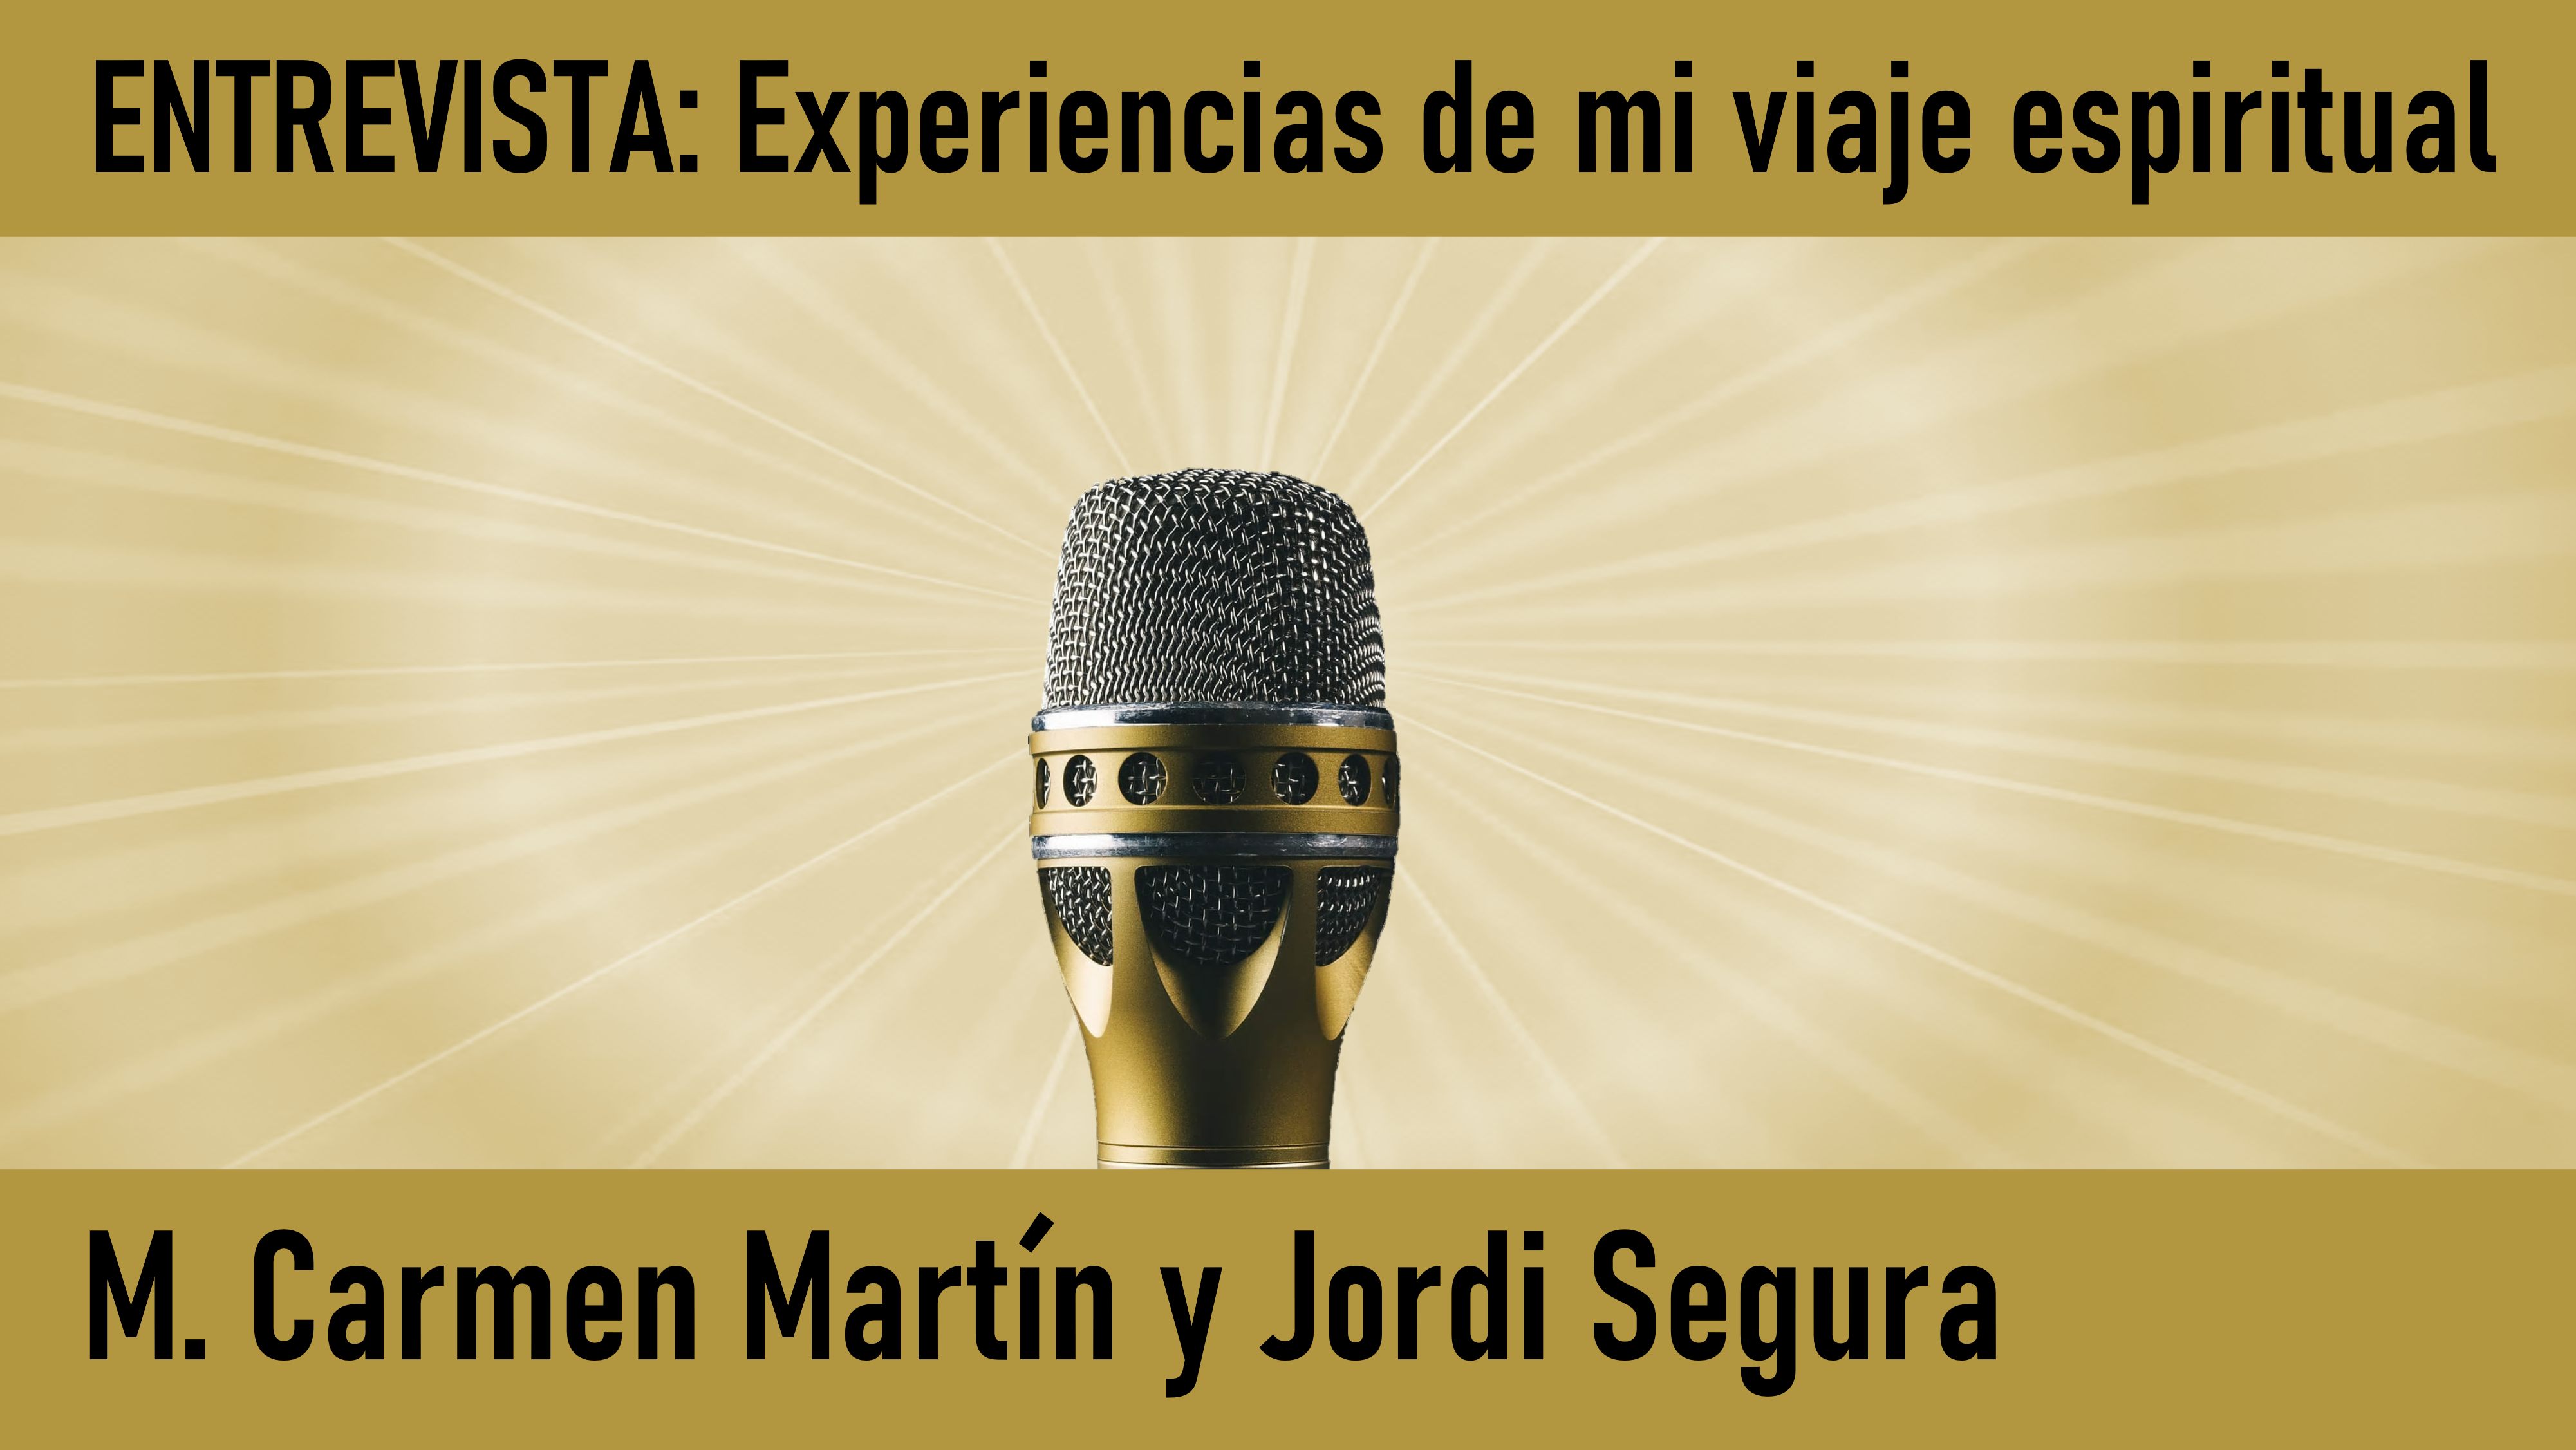 Entrevista  Experiencias viaje espiritual. M.Carmen Martín y Jordi Segura (19 Junio 2020) On-line desde Valencia